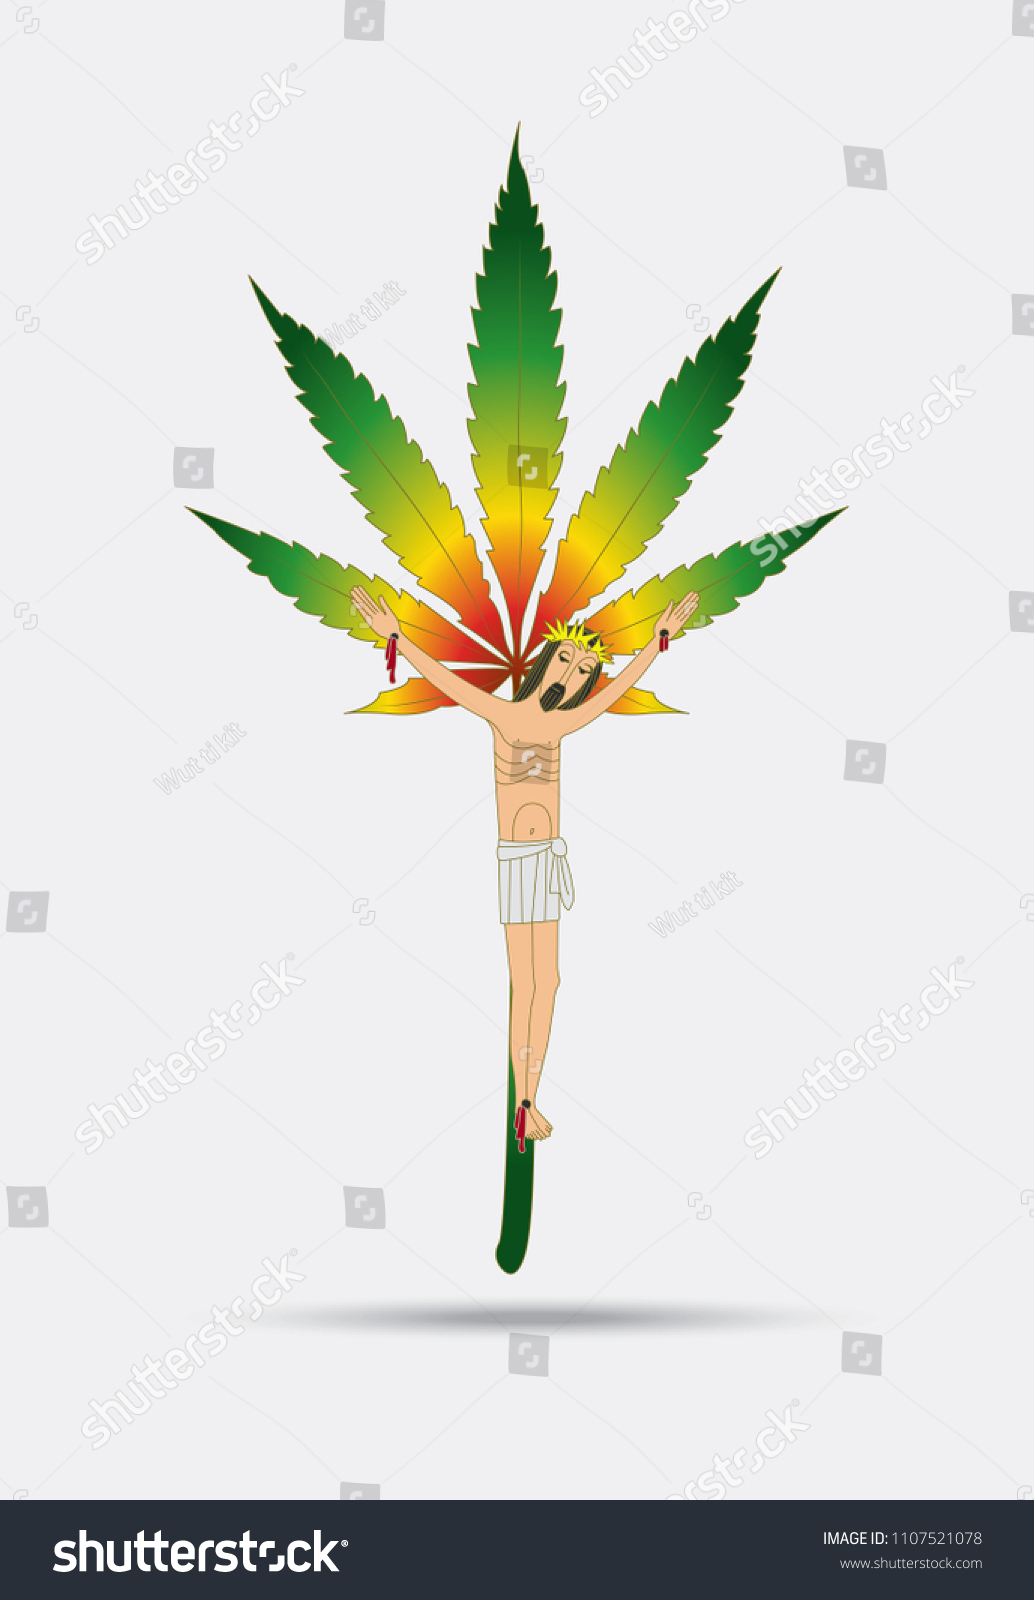 tgod logo weed